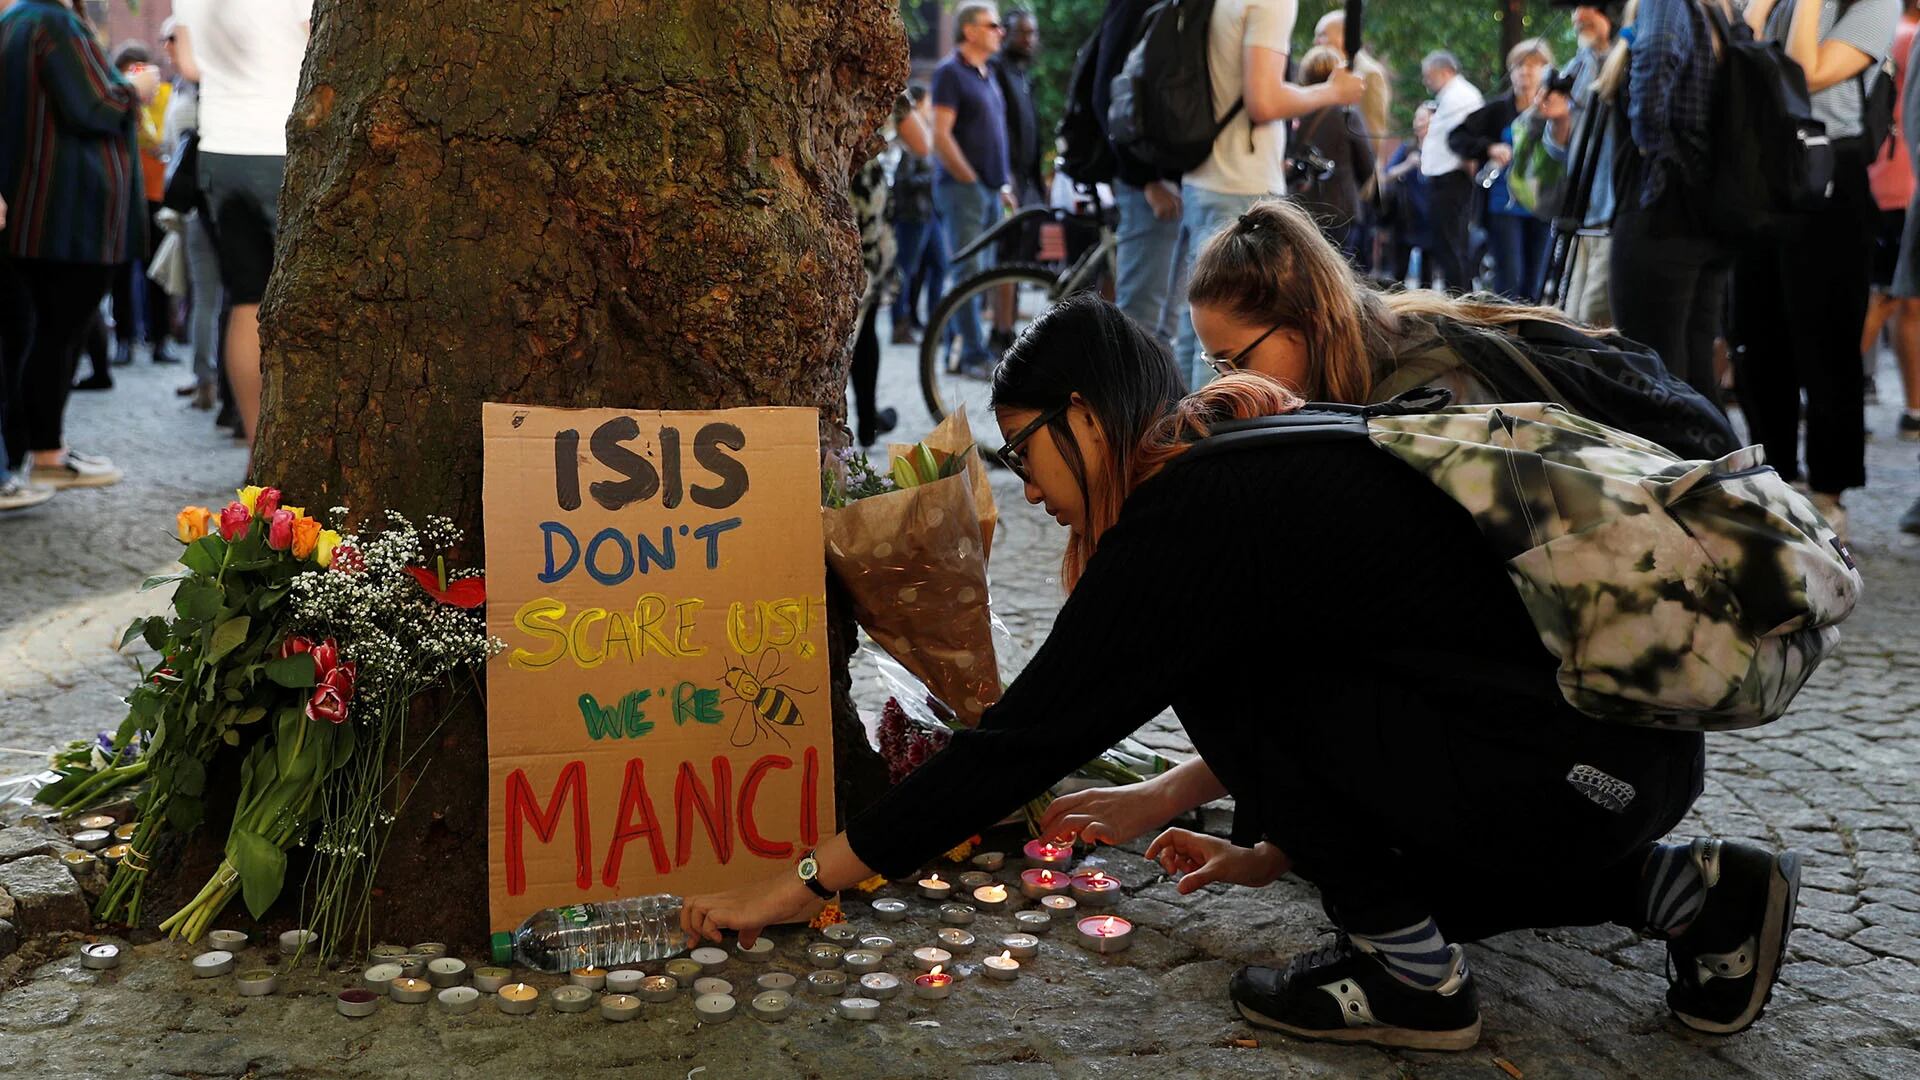 “ISIS no nos asusta”, señala un cartel apoyado sobre un árbol (REUTERS)